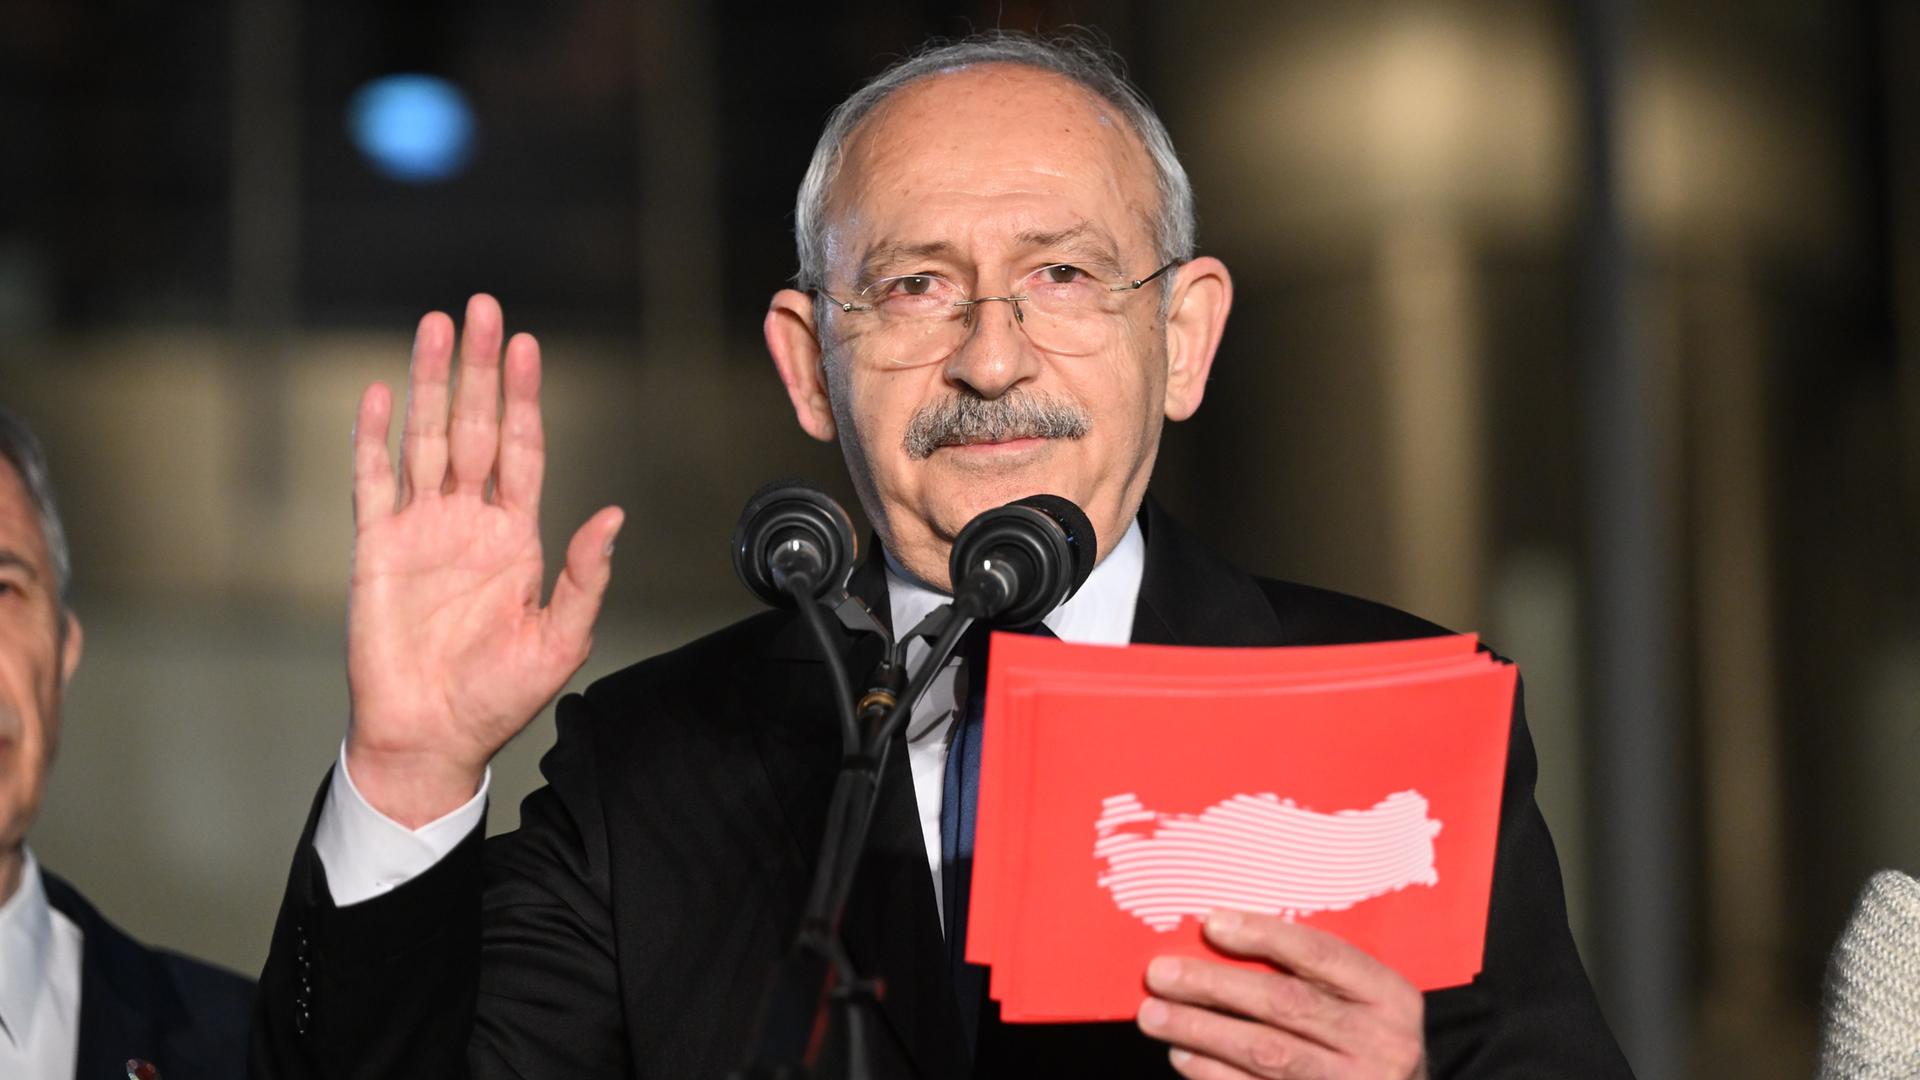 Der Politiker Kemal Kilicdaroglu bei einer Rede an einem Mikrophon. in der Hand hält er rote Karteikarten. 